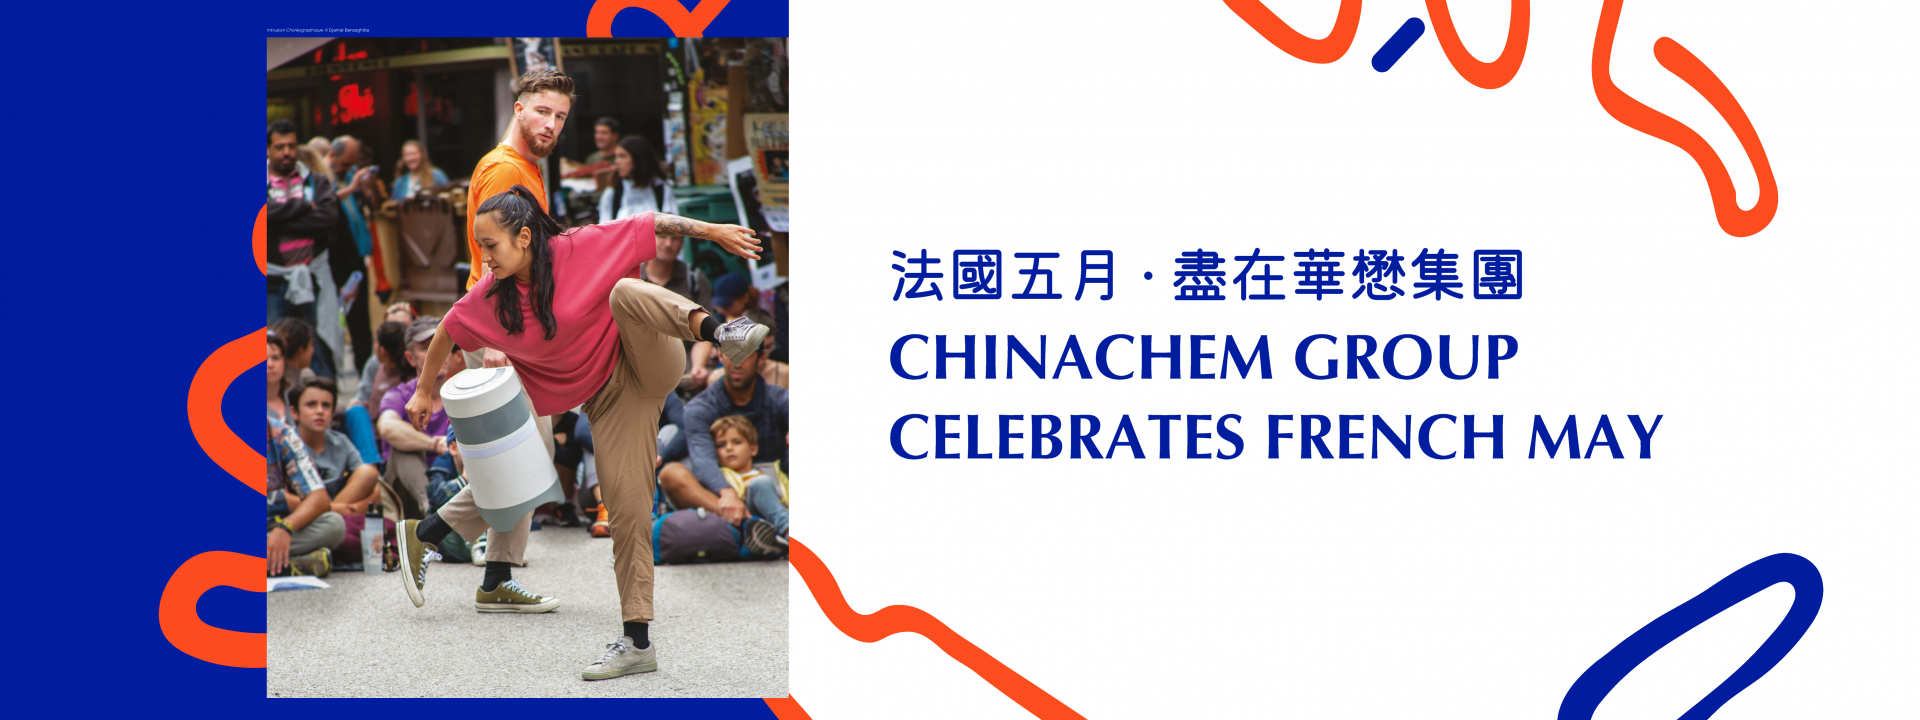 Chinachem Group Celebrates French May 